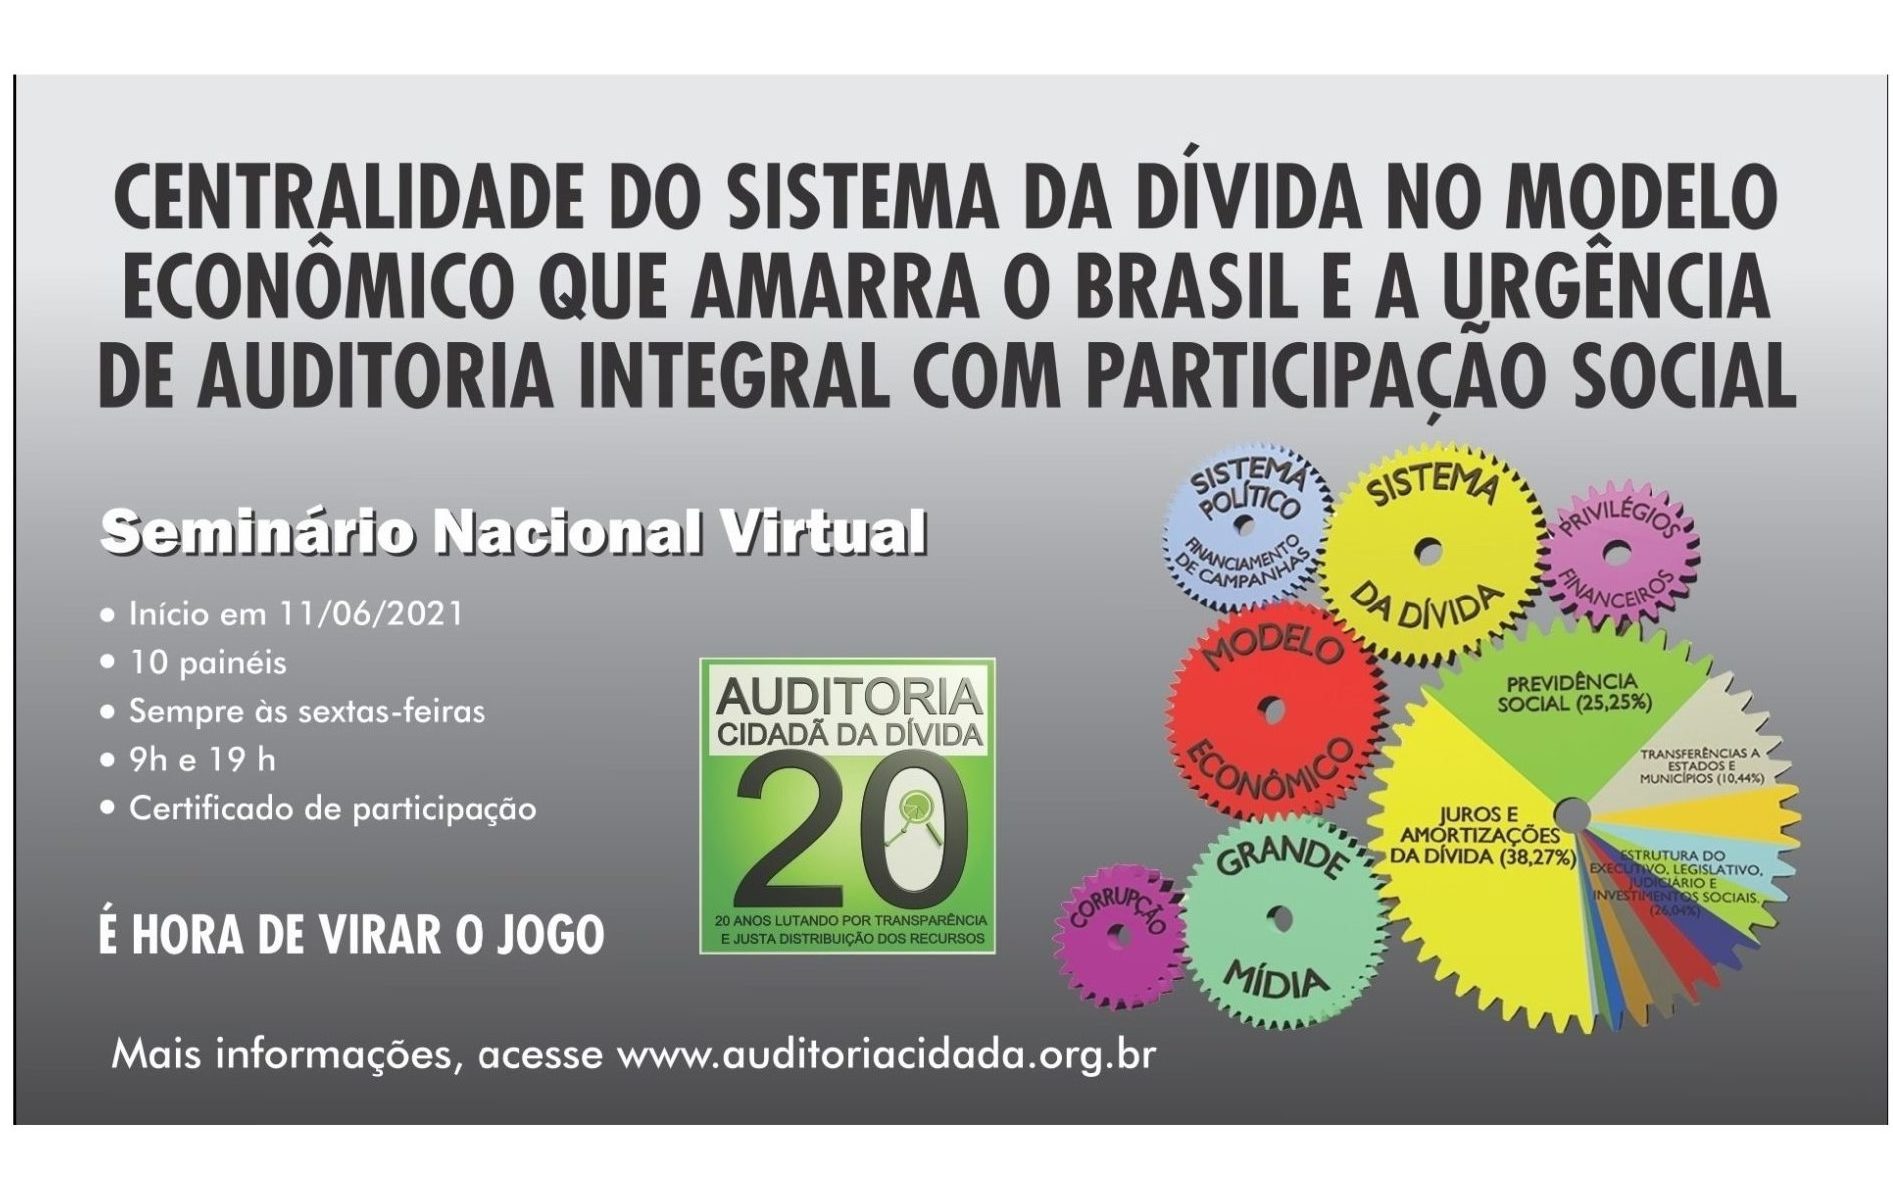 SEMINÁRIO NACIONAL VIRTUAL “Centralidade do Sistema da Dívida no modelo econômico que amarra o Brasil e a urgência da auditoria integral com participação social”